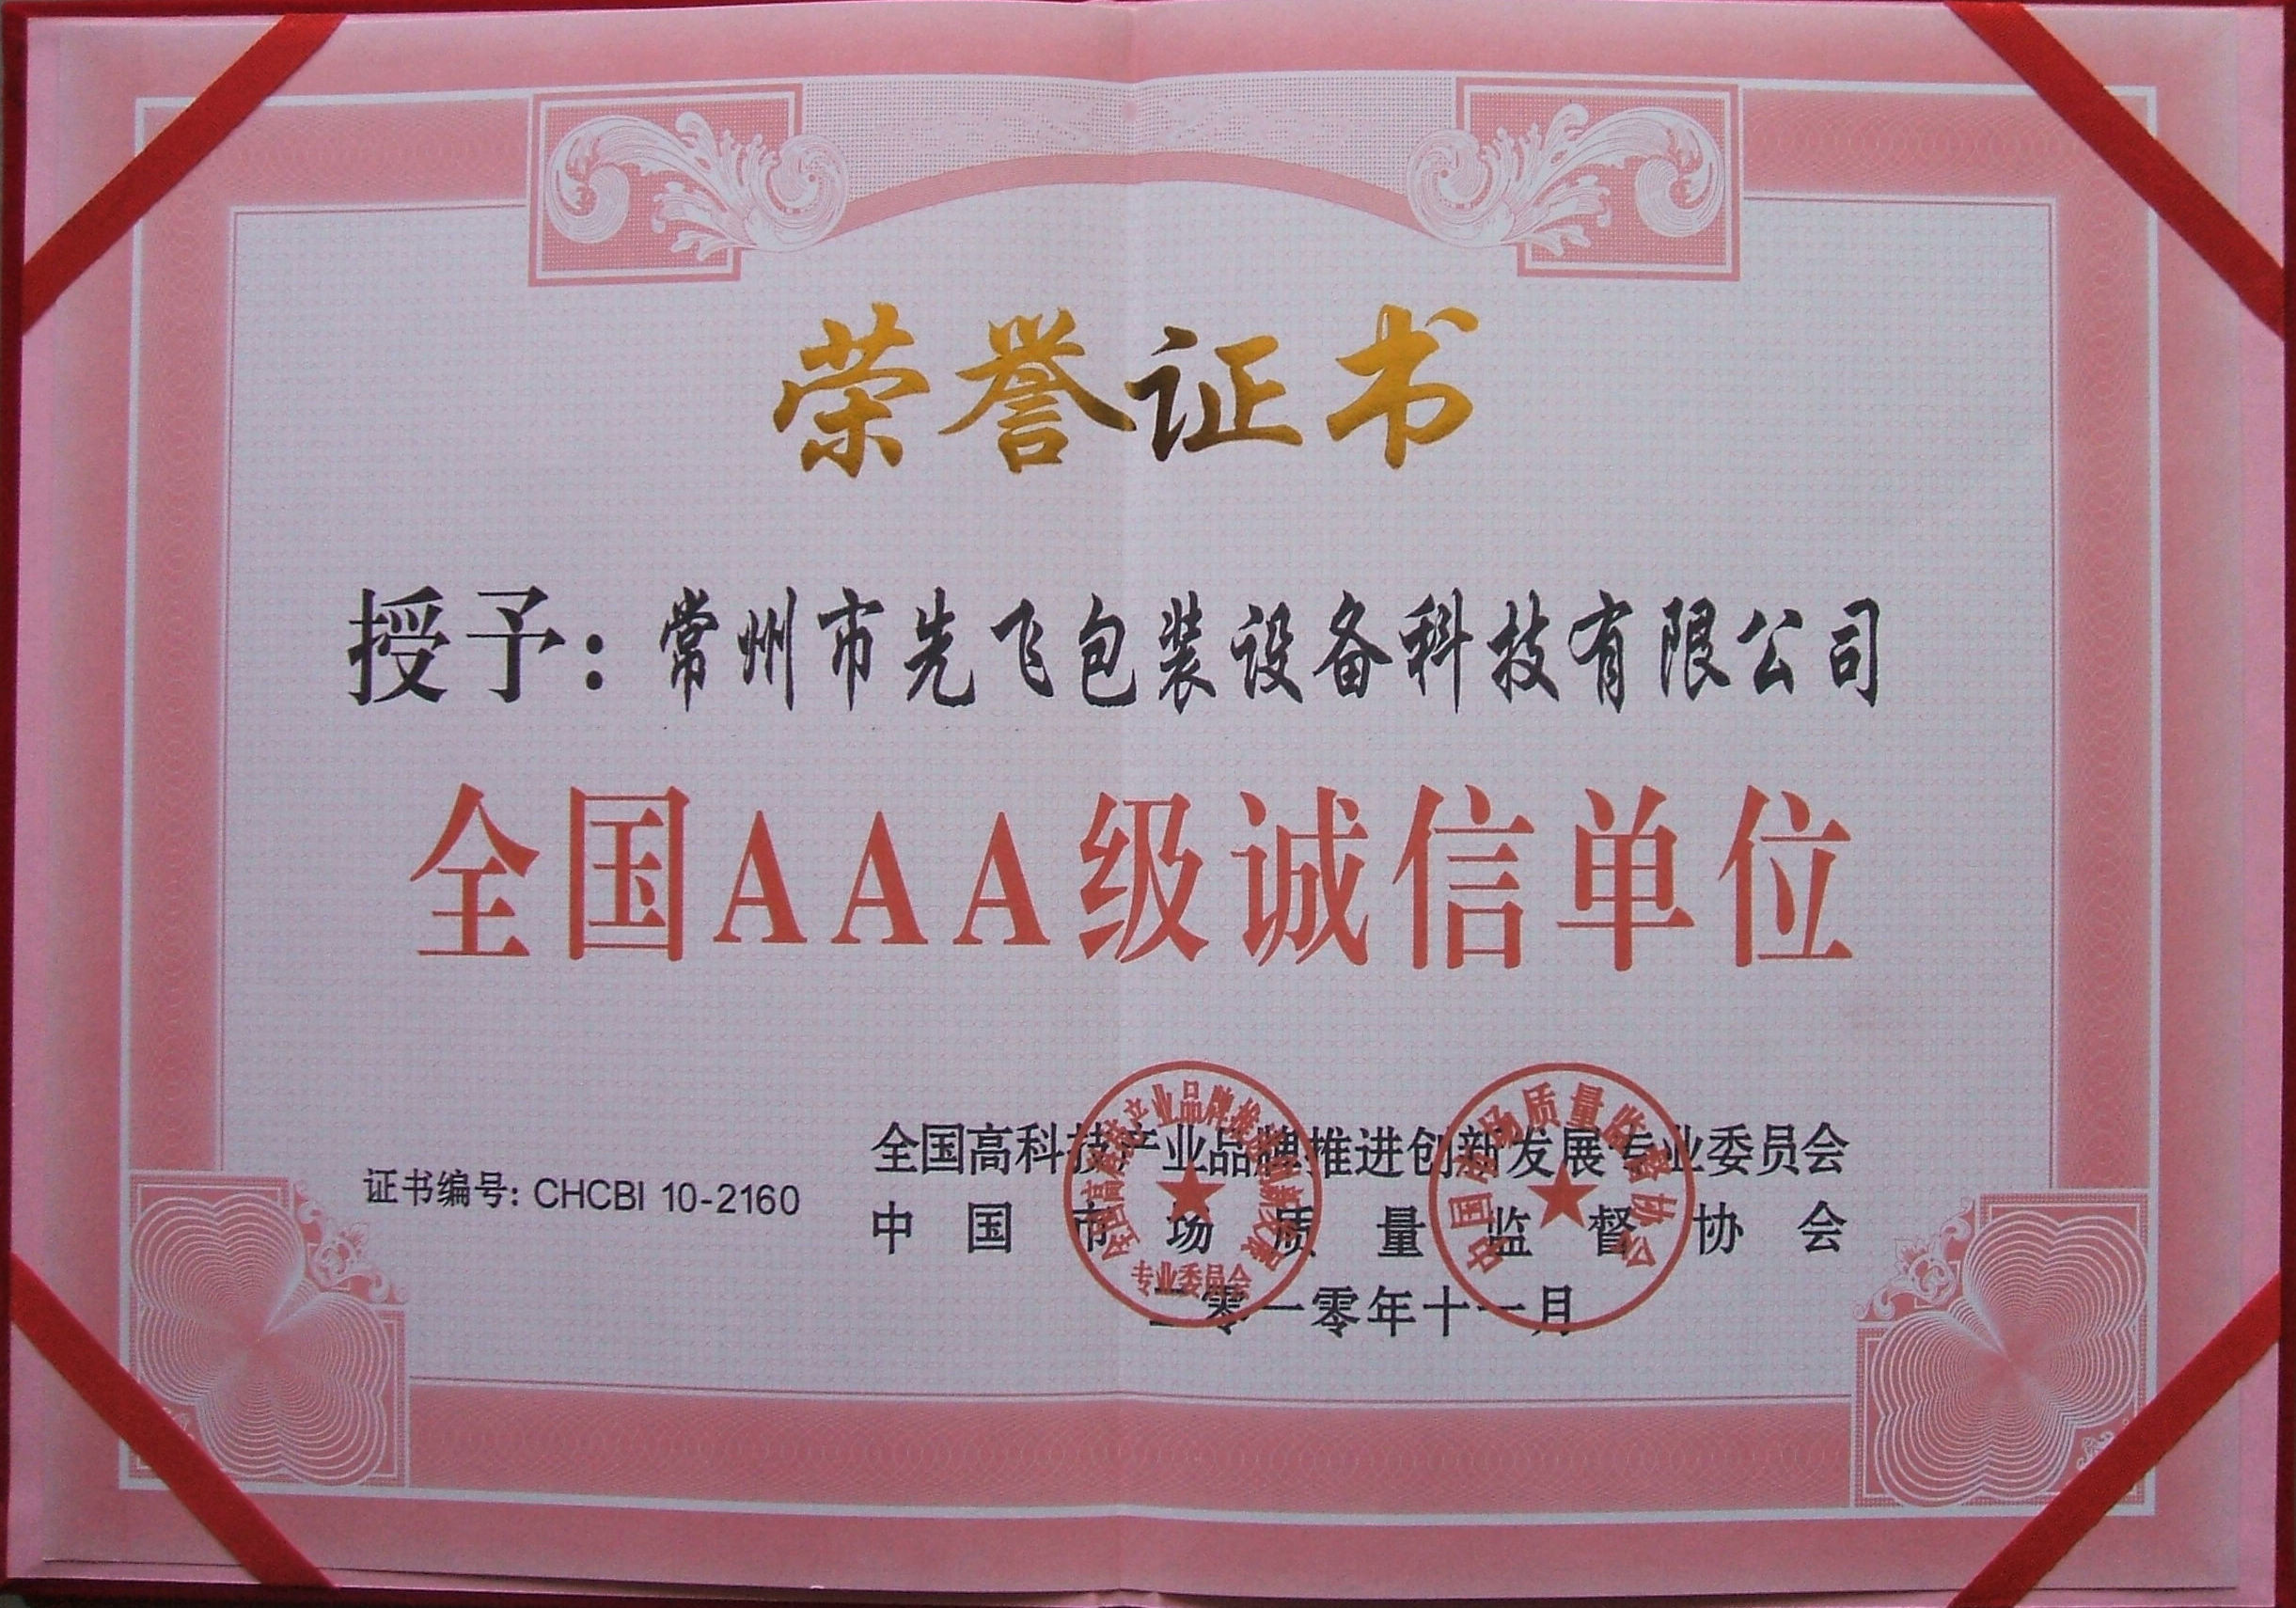 China Changzhou Xianfei Packing Equipment Technology Co., Ltd. Certificaciones